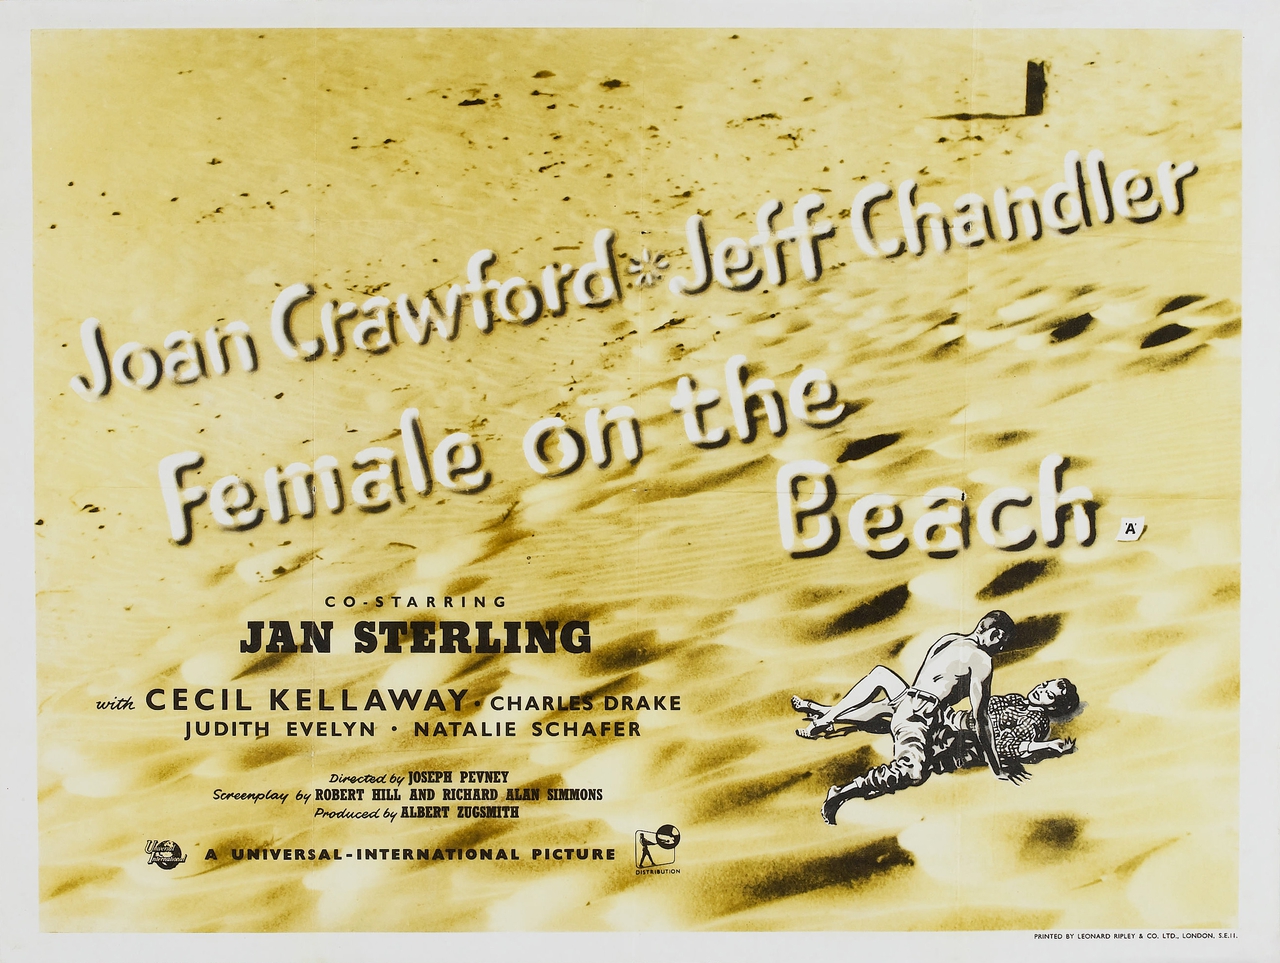  فیلم سینمایی Female on the Beach به کارگردانی Joseph Pevney